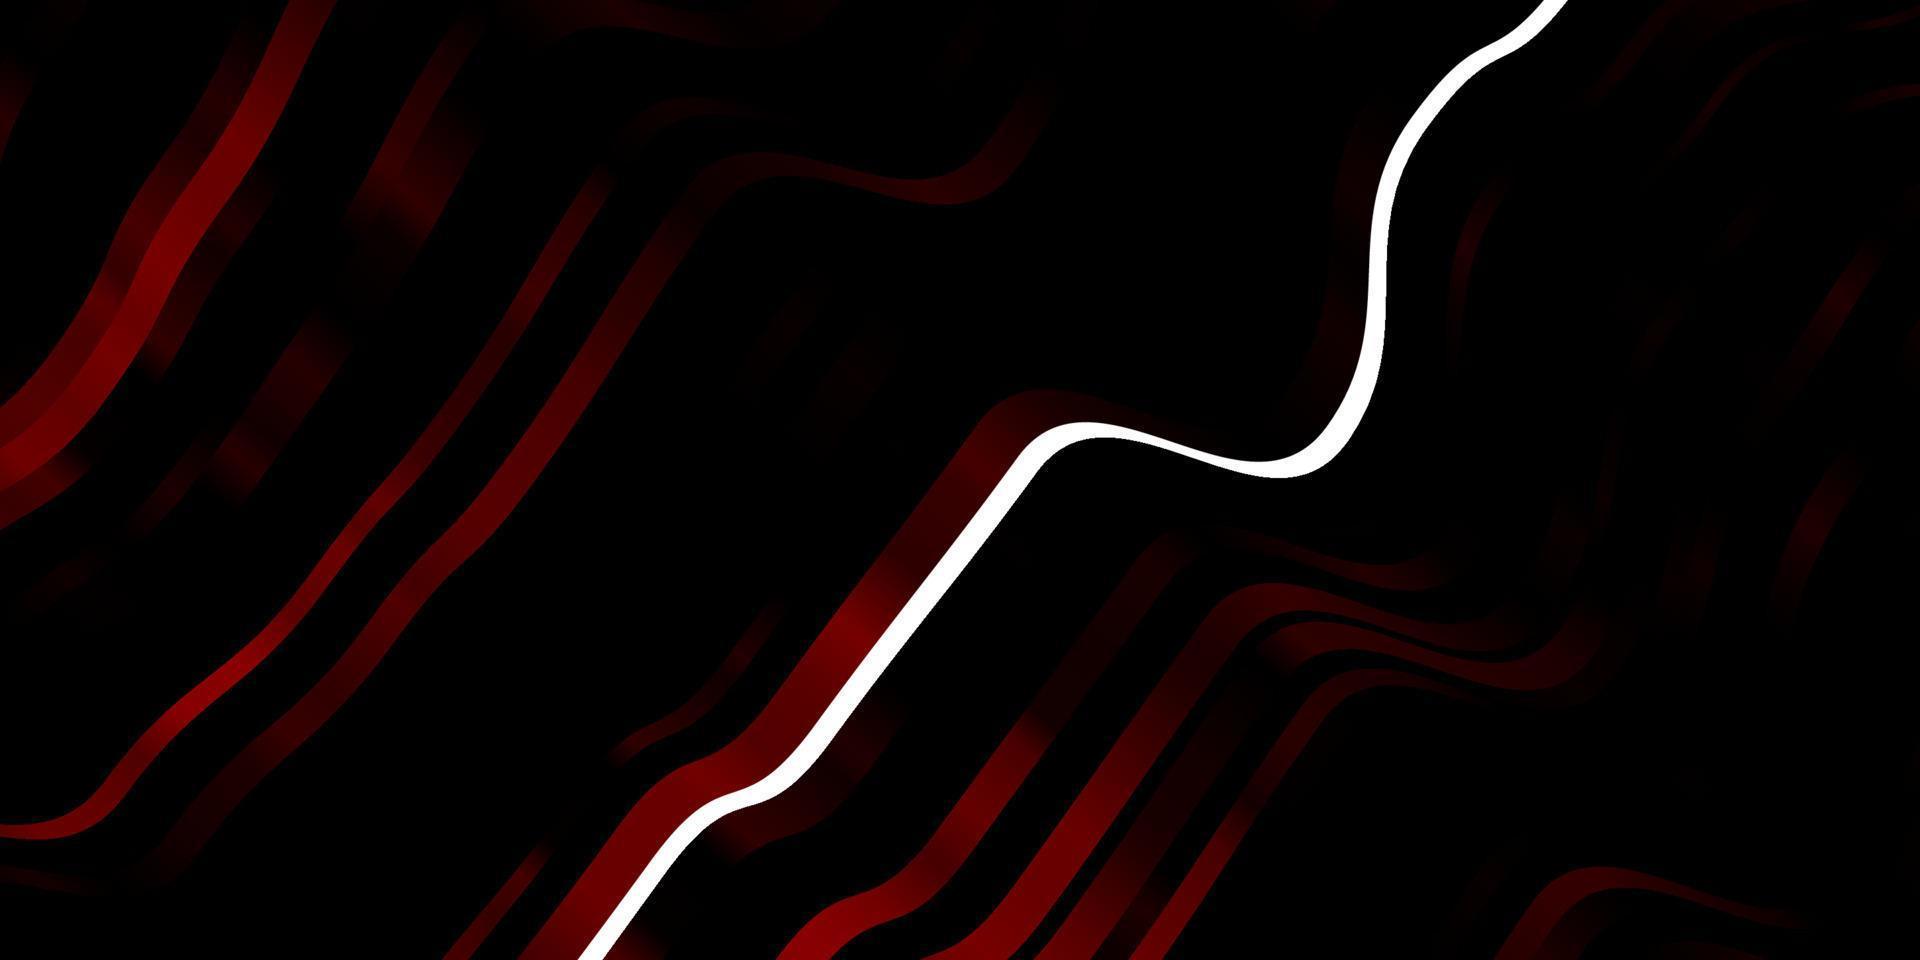 sfondo vettoriale rosso scuro con linee.